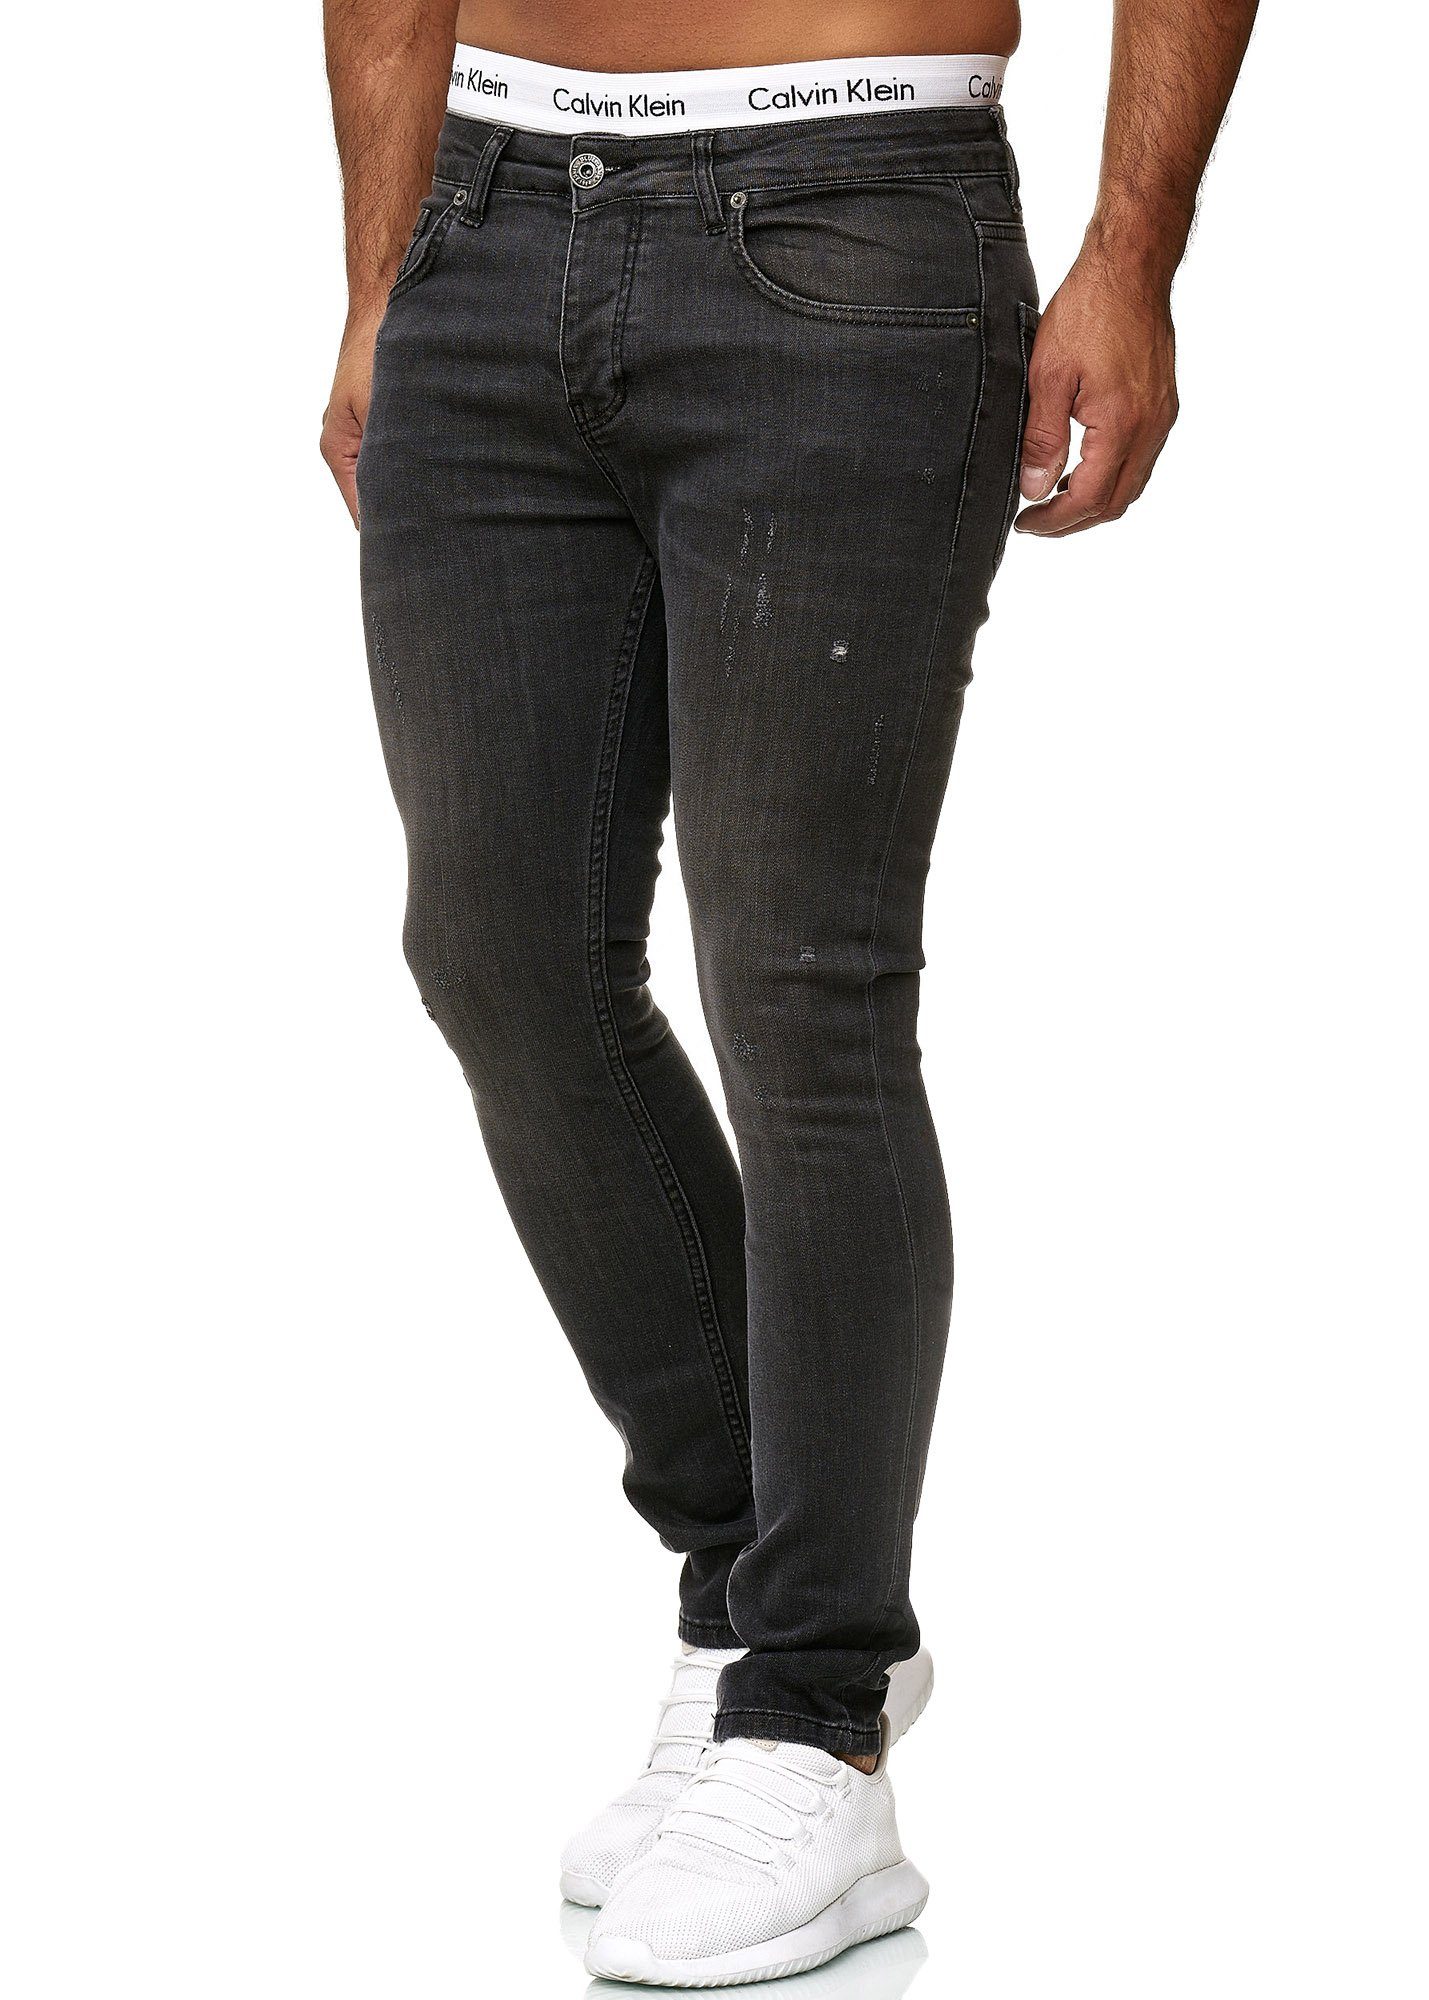 605 Grey Skinny-fit-Jeans Skinny Code47 Code47 Designer Hose Herren Fit Basic Deep Used Jeanshose Jeans Regular